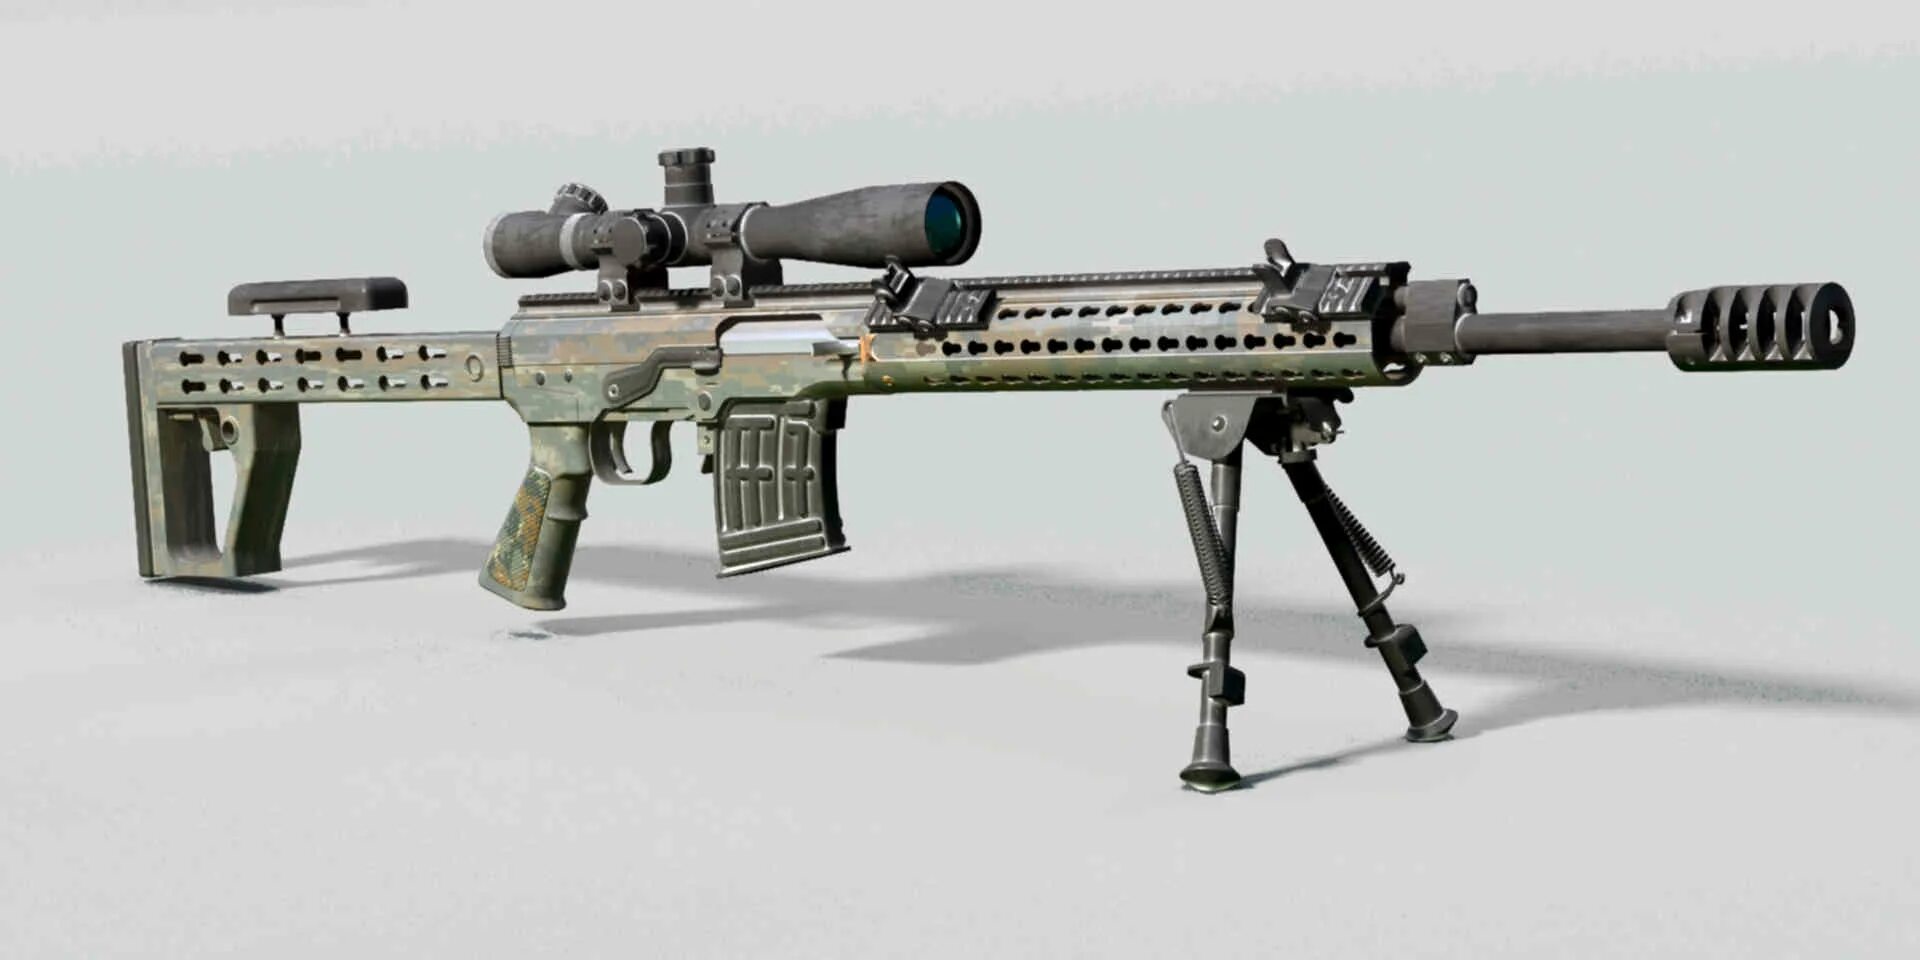 Снайперская винтовка СВДМ. Снайперская винтовка СВДМ-2. СВД М винтовка СВДМ 2. Erma SR-100 снайперская винтовка. Свд м